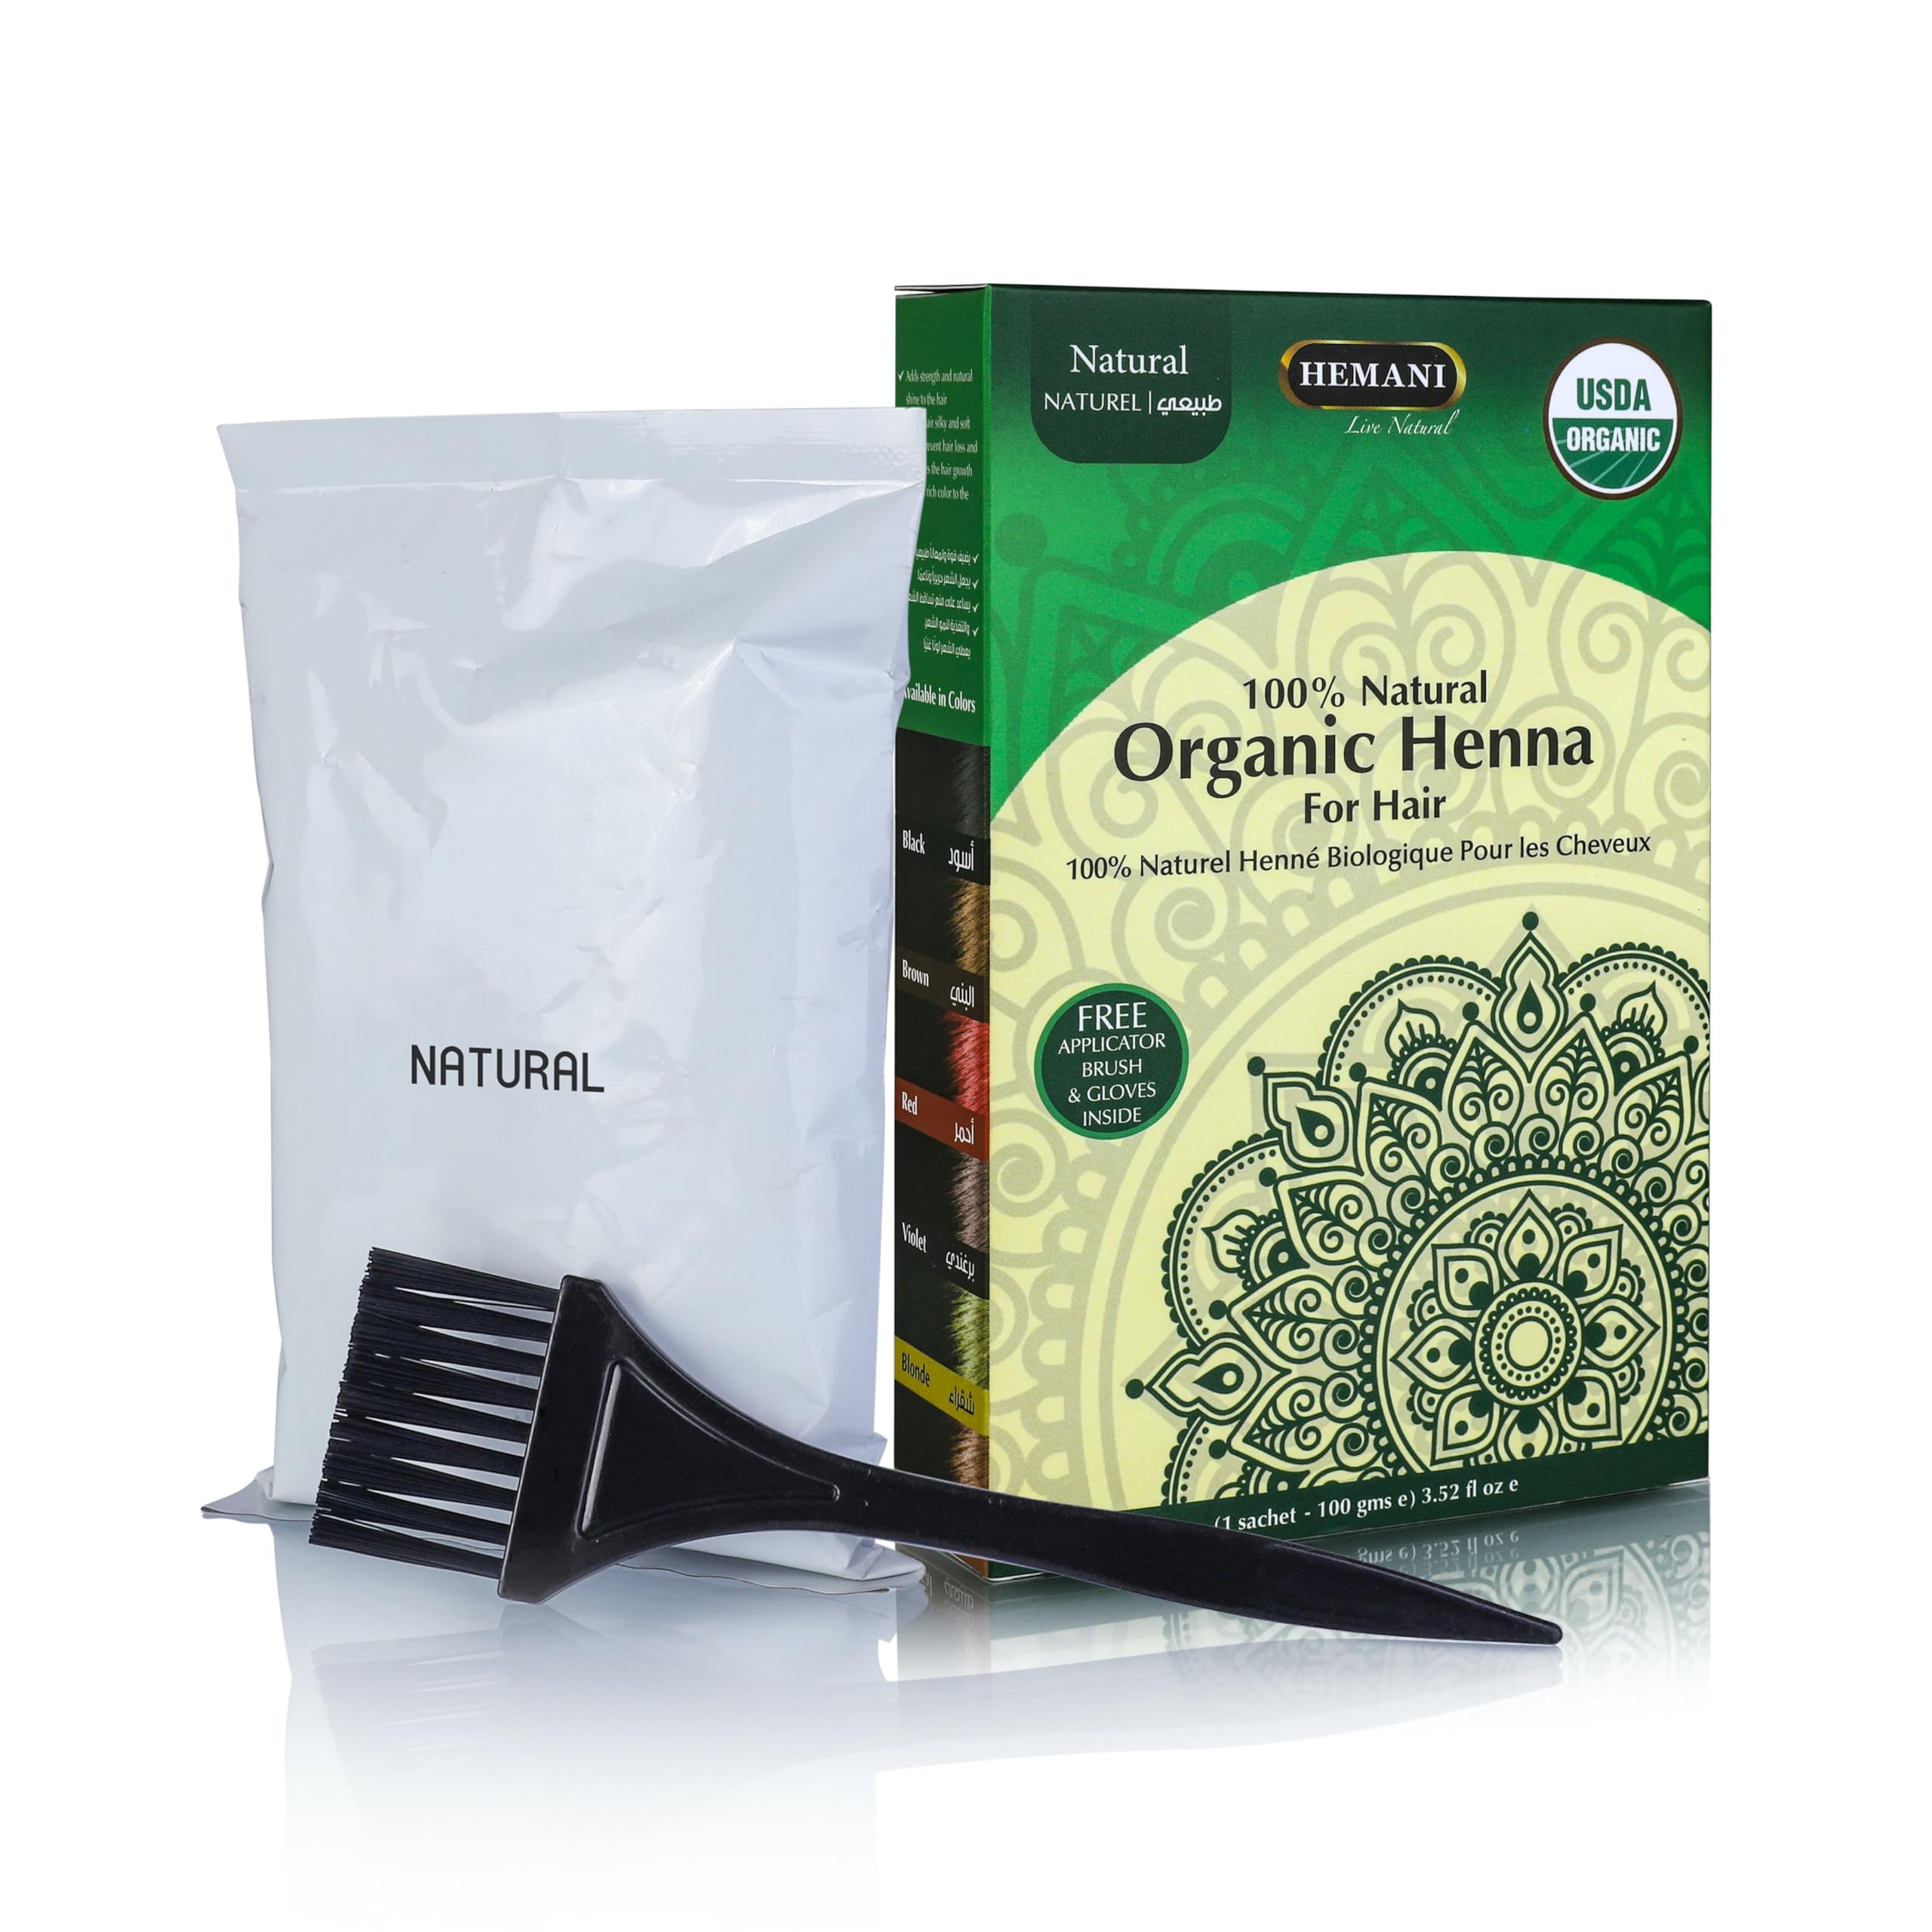 HEMANI Organic Henna Natural 100g